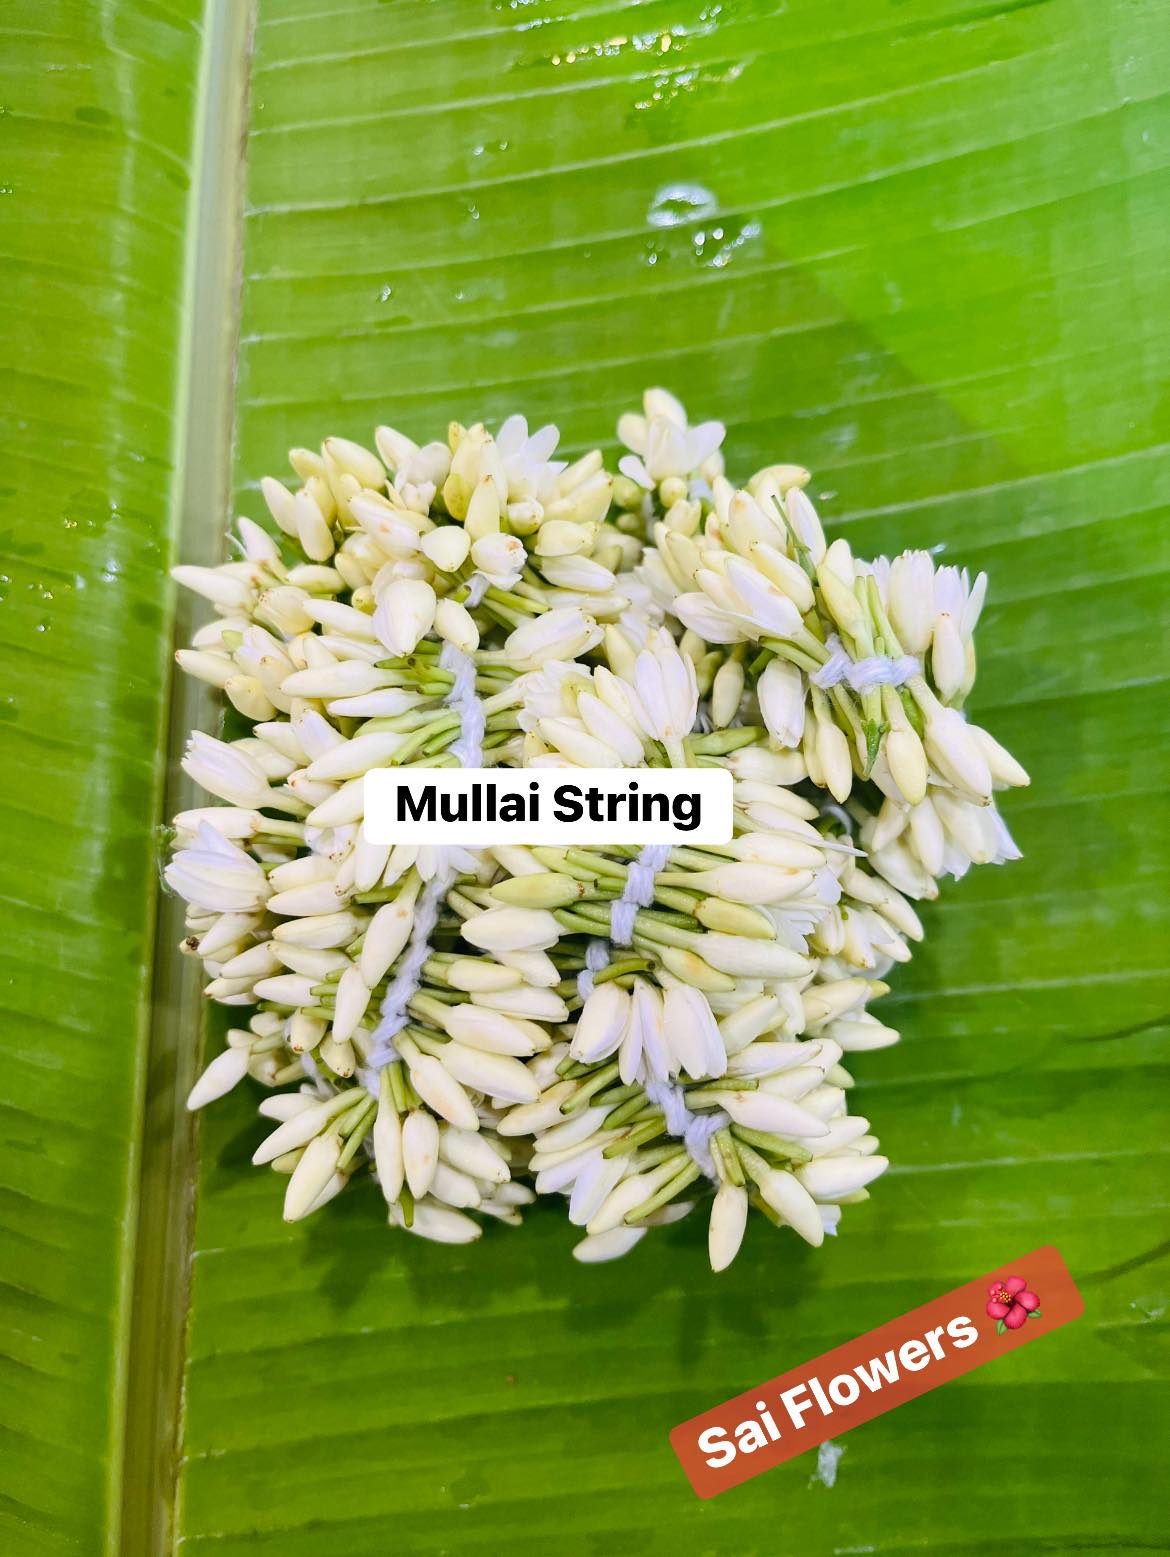 Mullai Strings